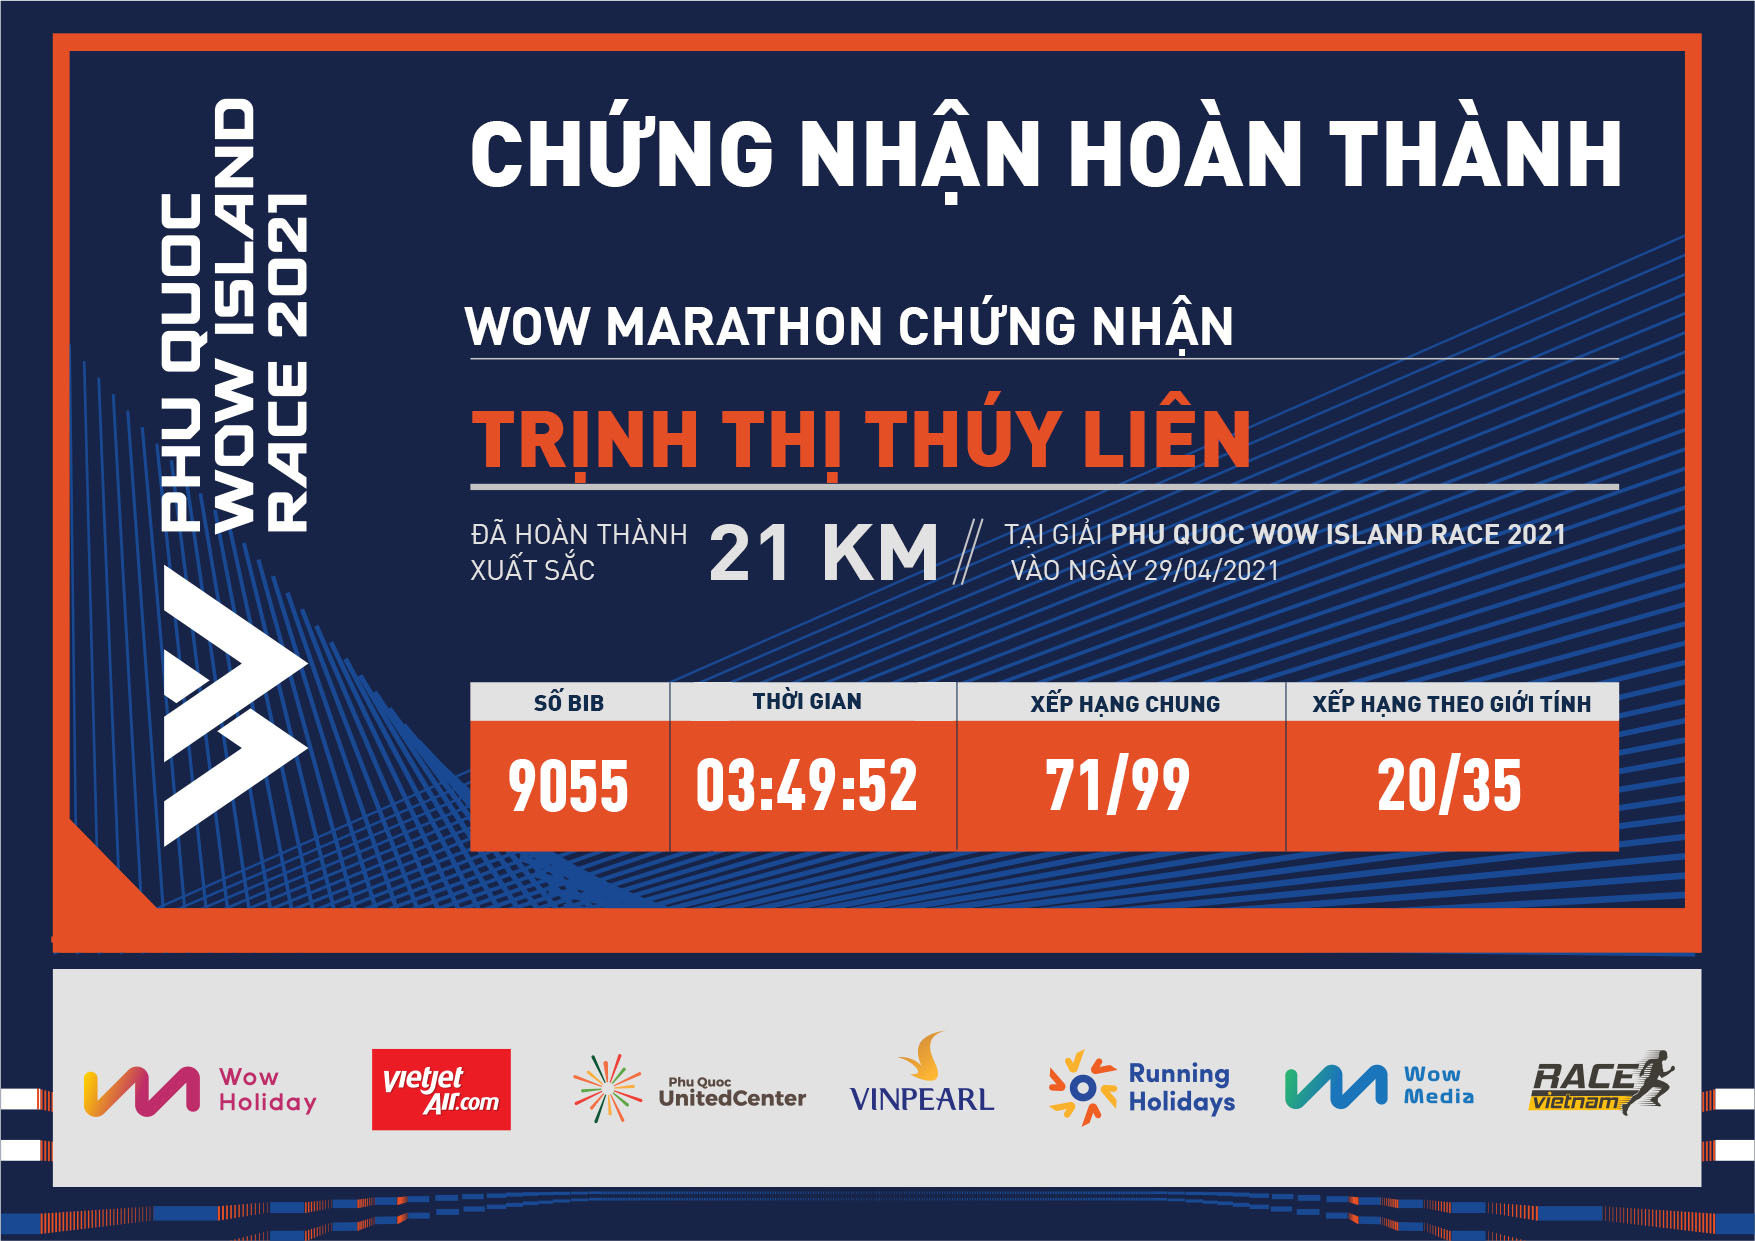 9055 - Trịnh Thị Thúy Liên